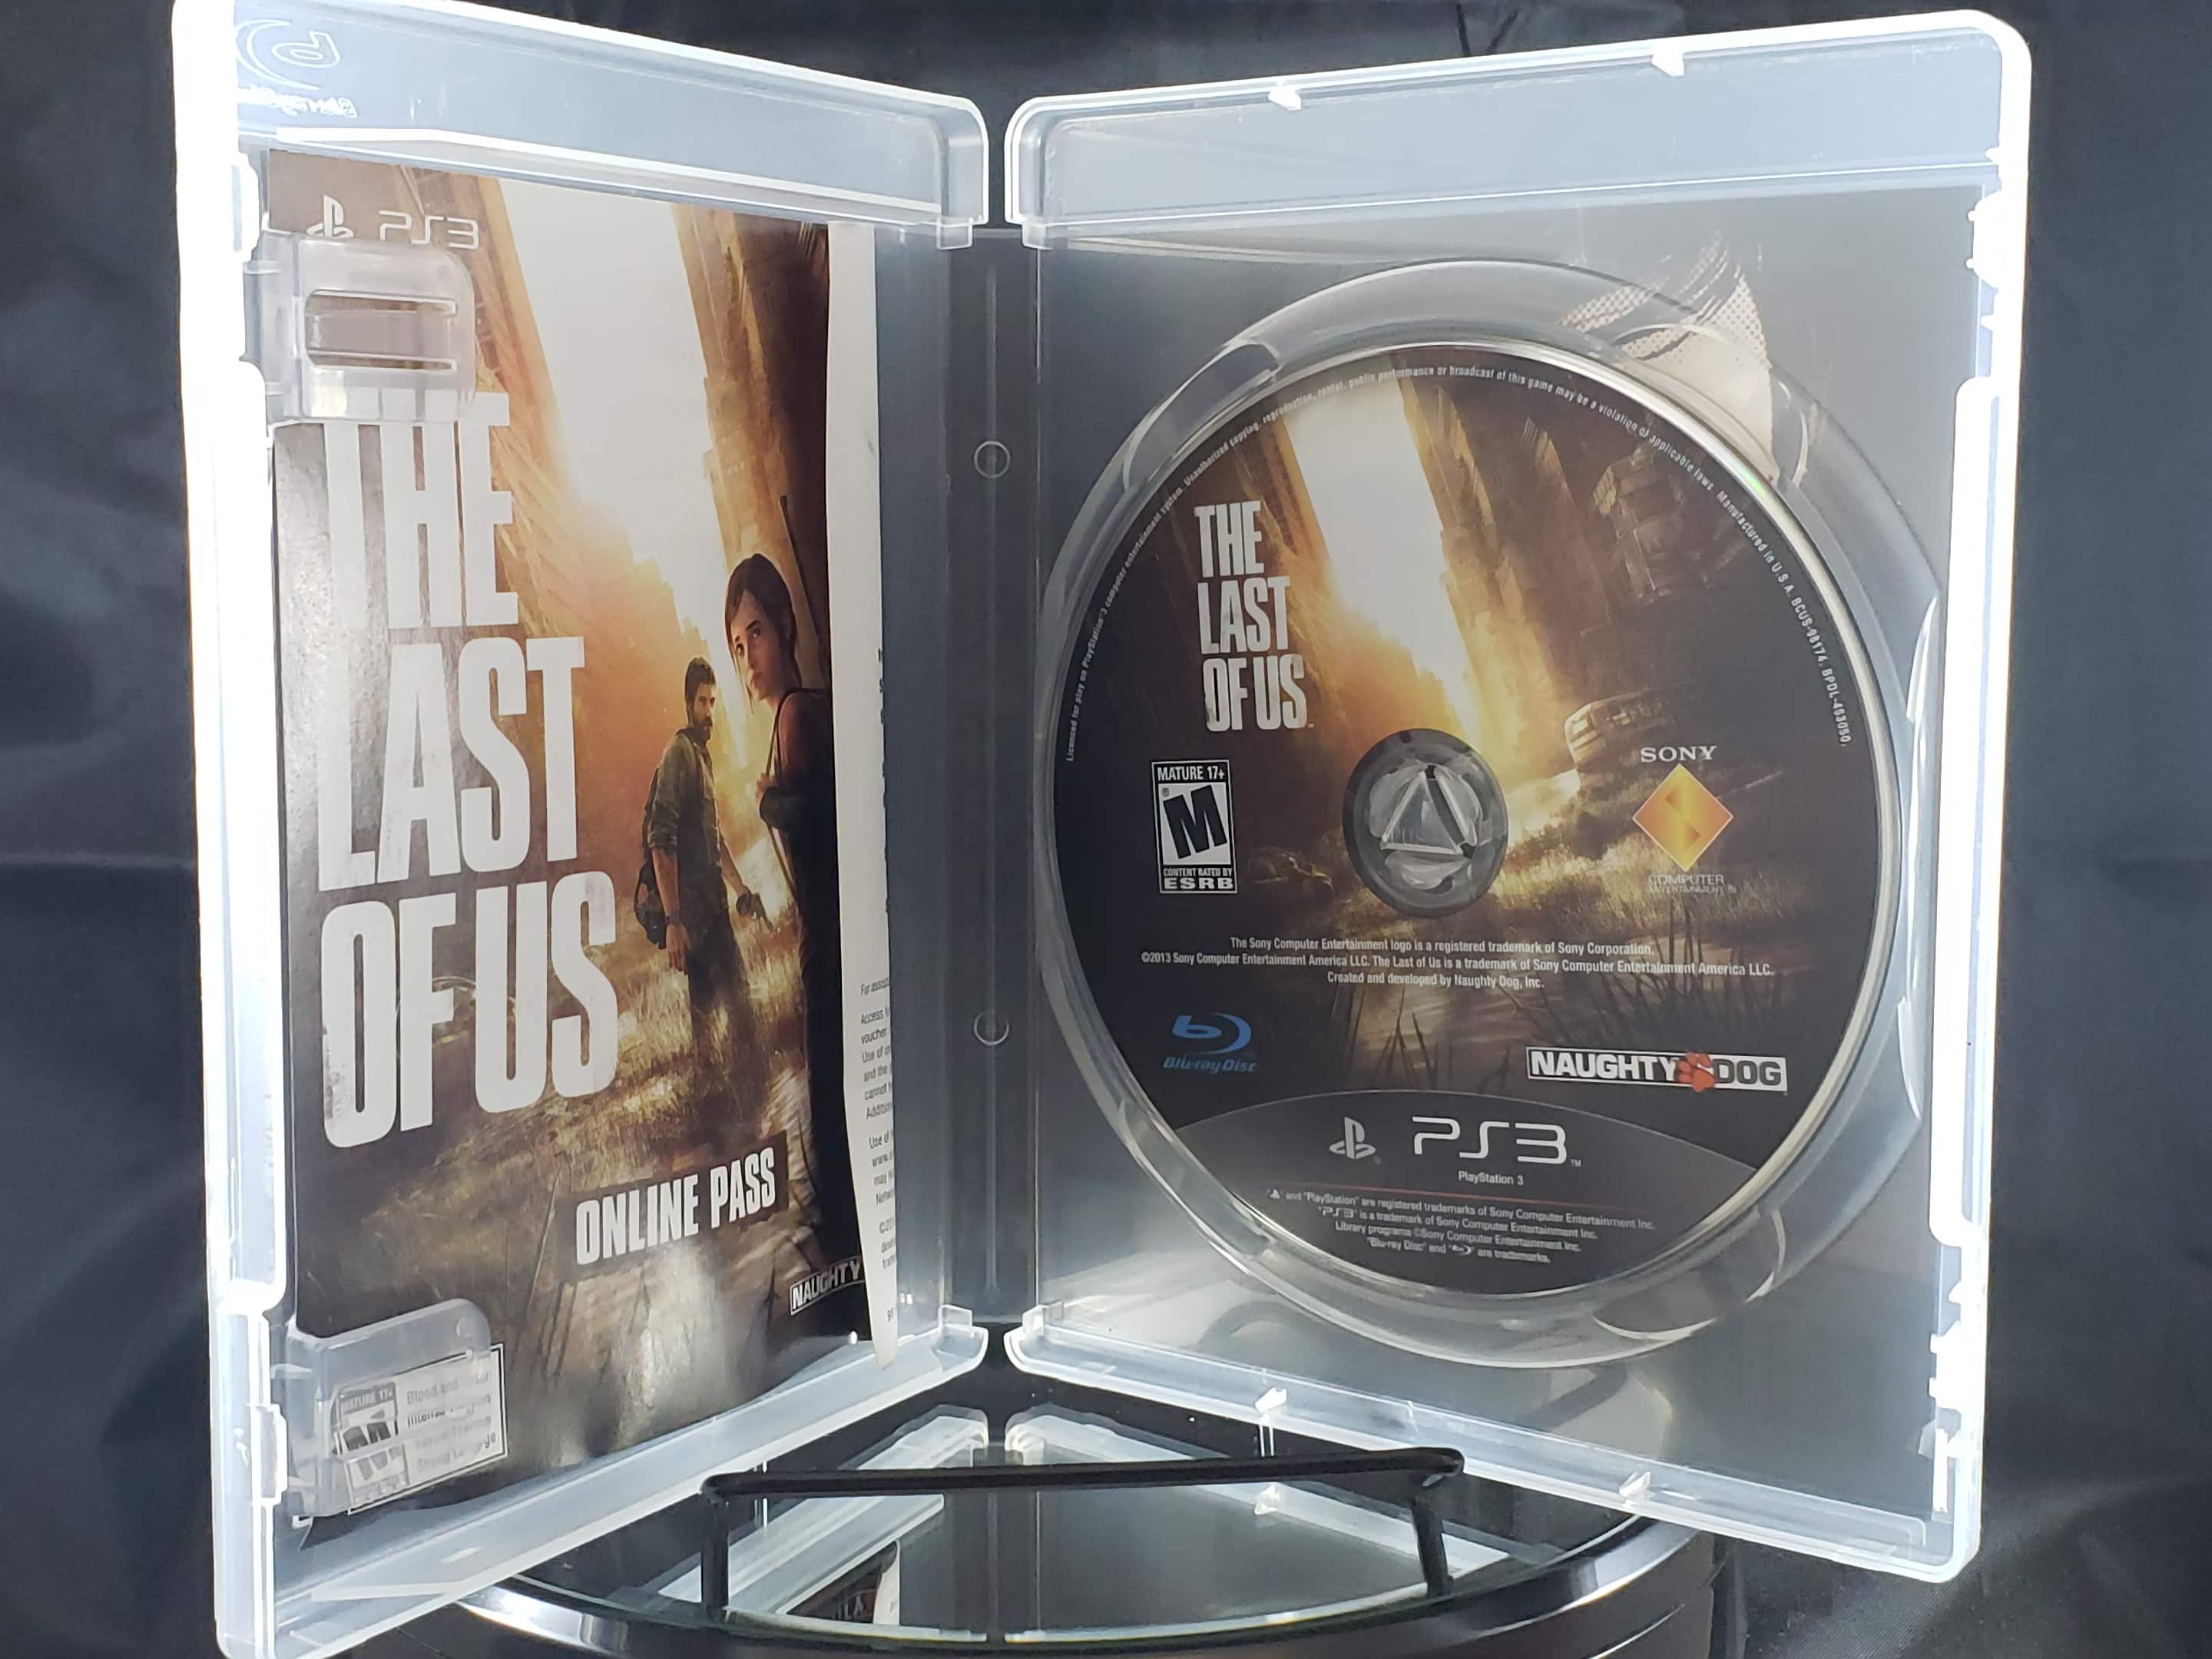 The Last Of Us - Ps3 (Seminovo) - Arena Games - Loja Geek